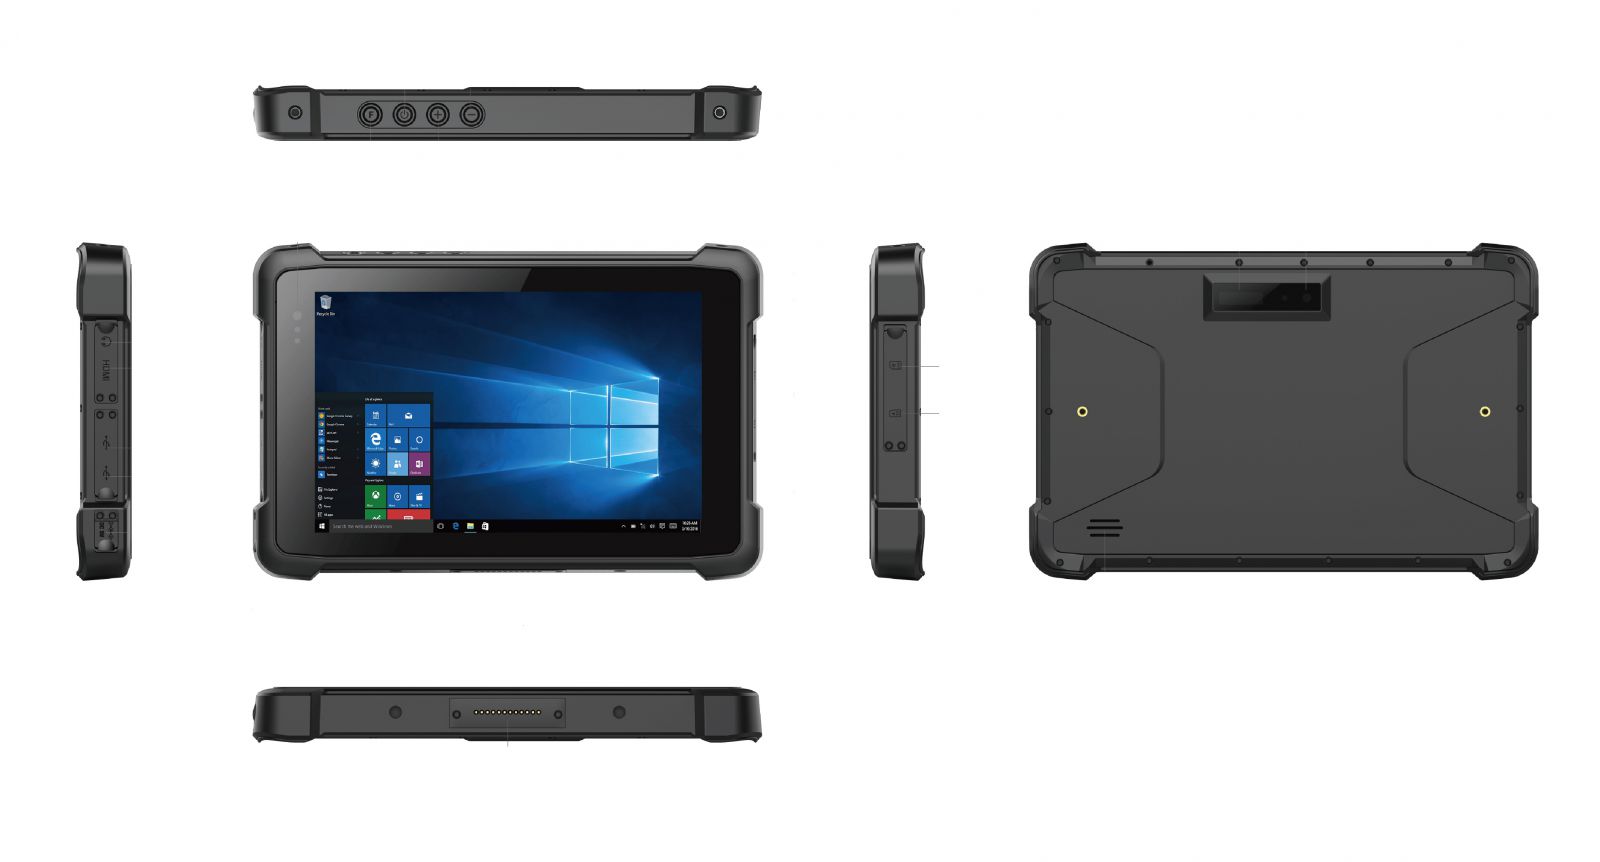 Emdoor I81H v.4 - Odporny na upadki omiocalowy tablet z Windows 10 Pro, Bluetooth 4.2, 4GB RAM pamici, dyskiem 64GB, czytnikiem kodw 2D N3680 Honeywell, NFC i 4G